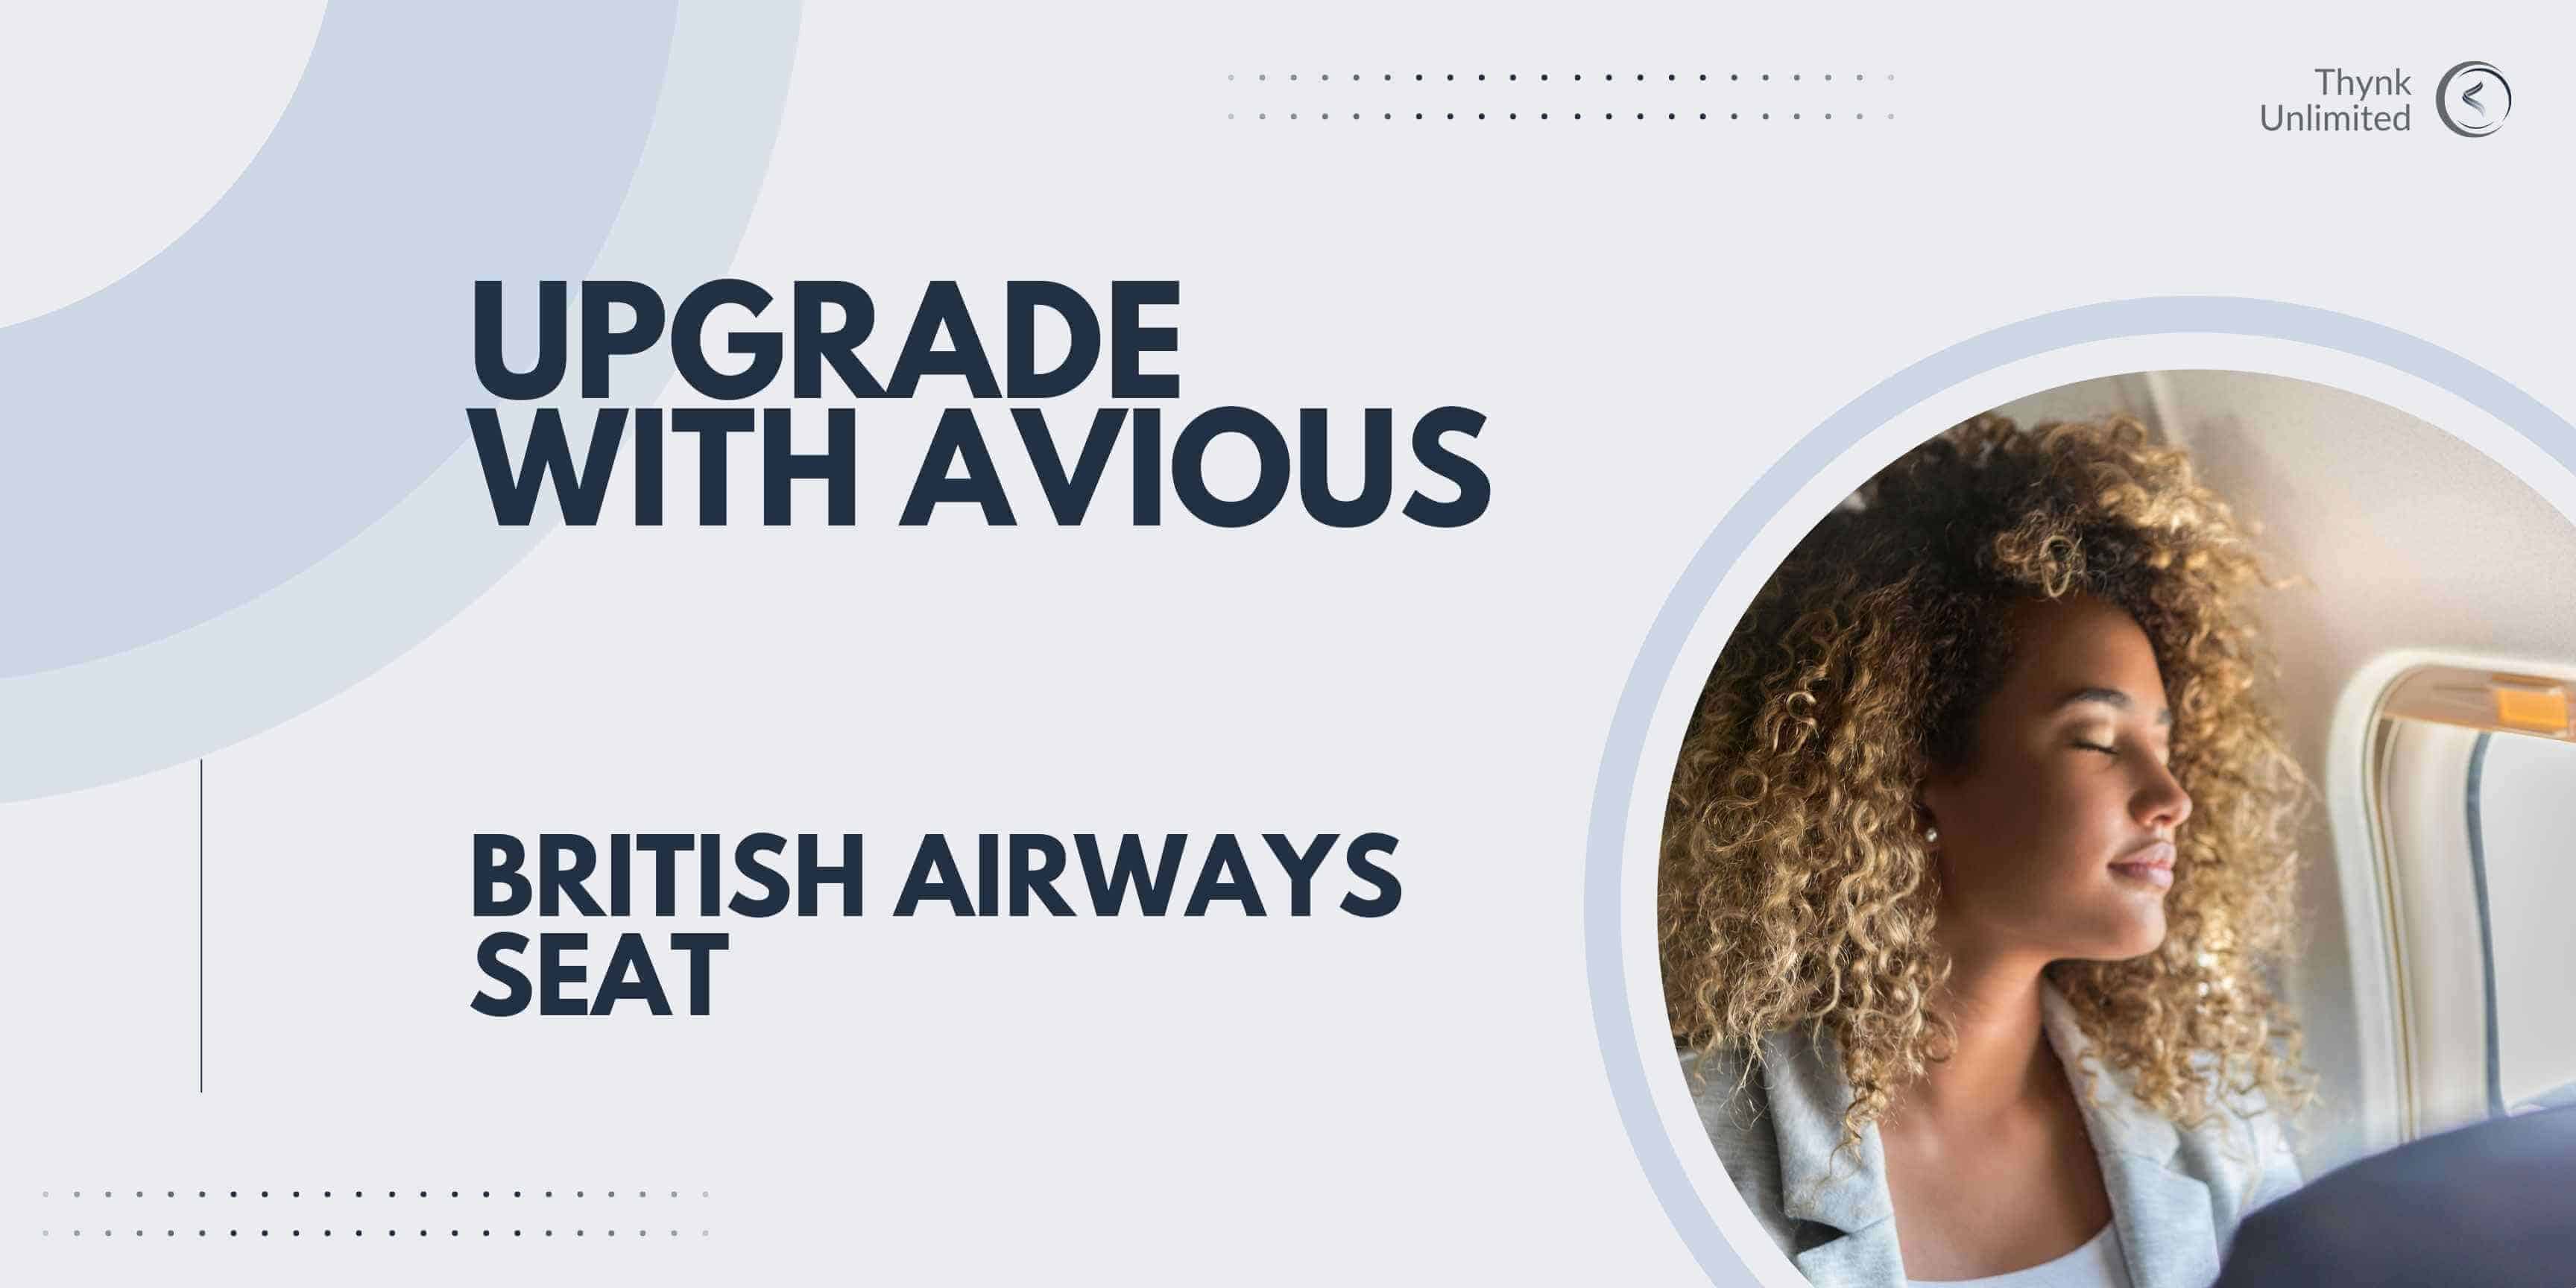 british-airways-seat-upgrade-with-avious